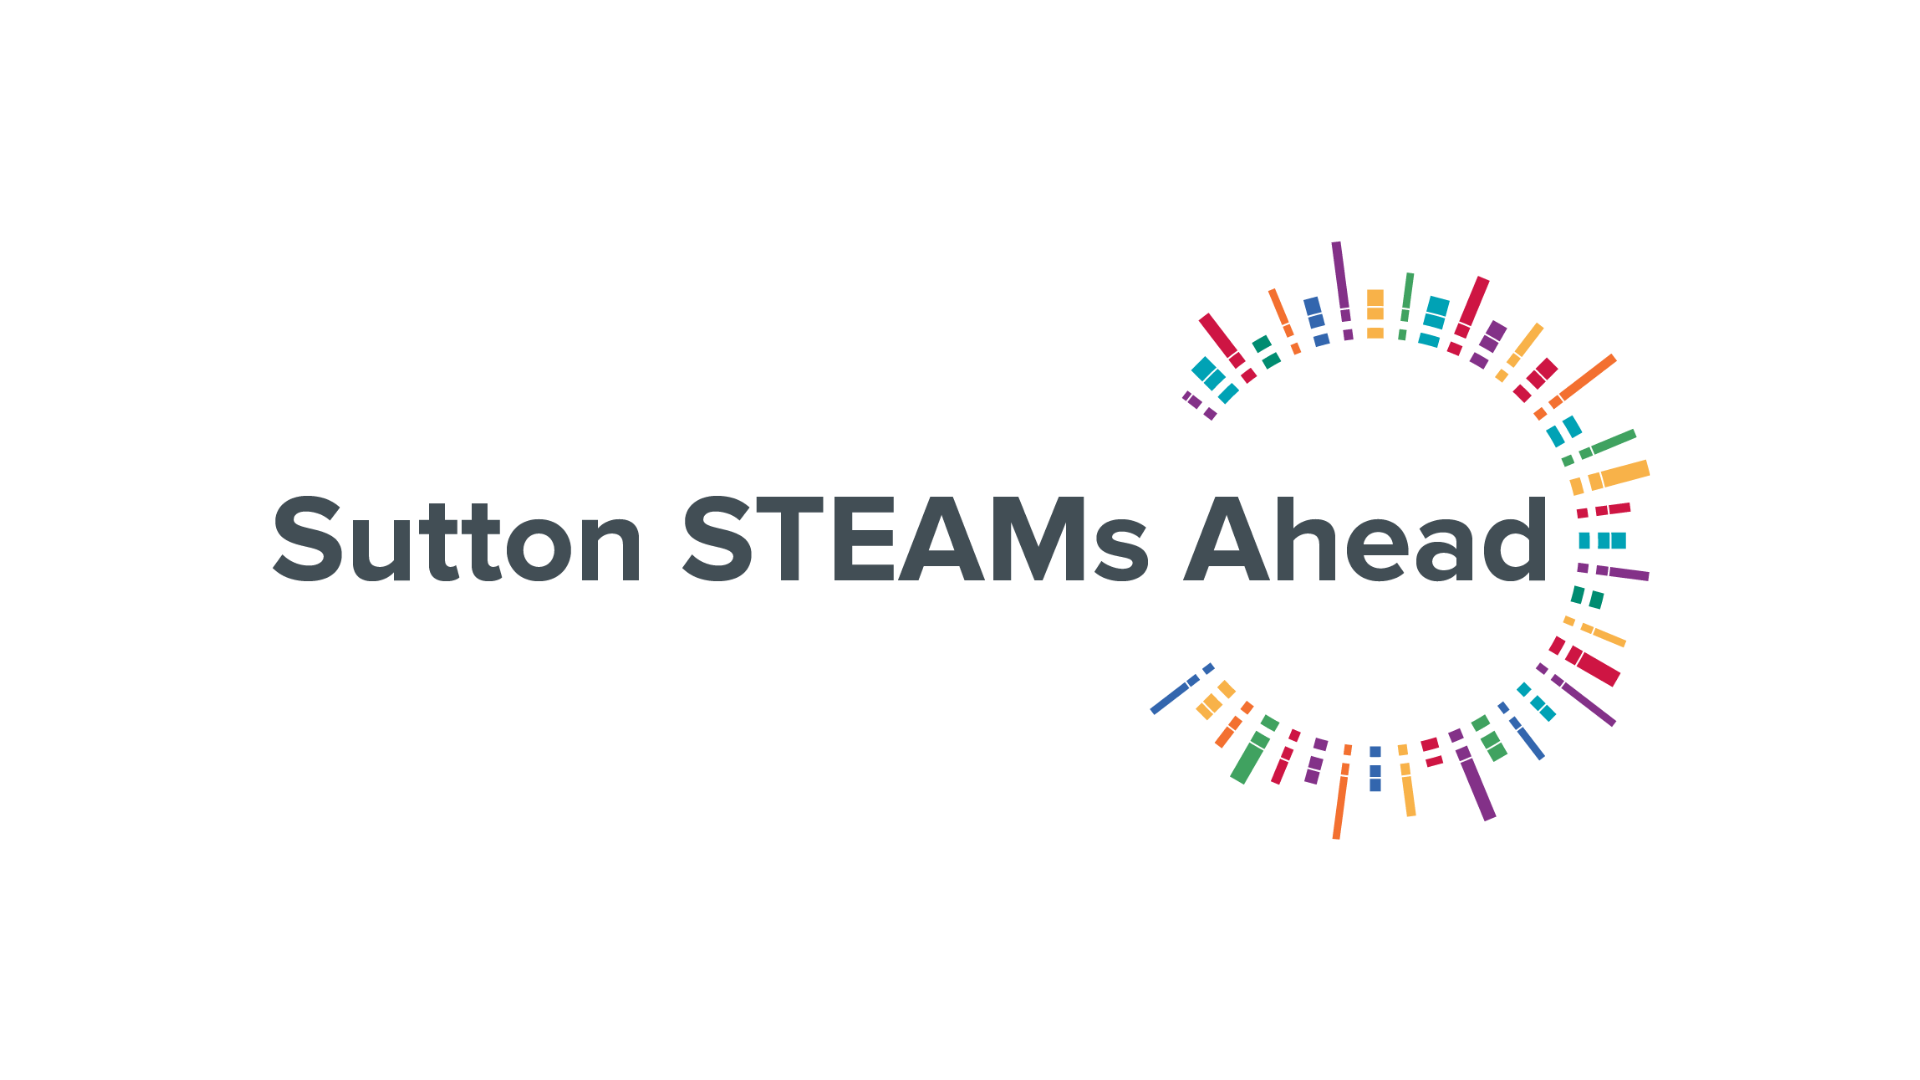 Sutton STEAMs Ahead logo